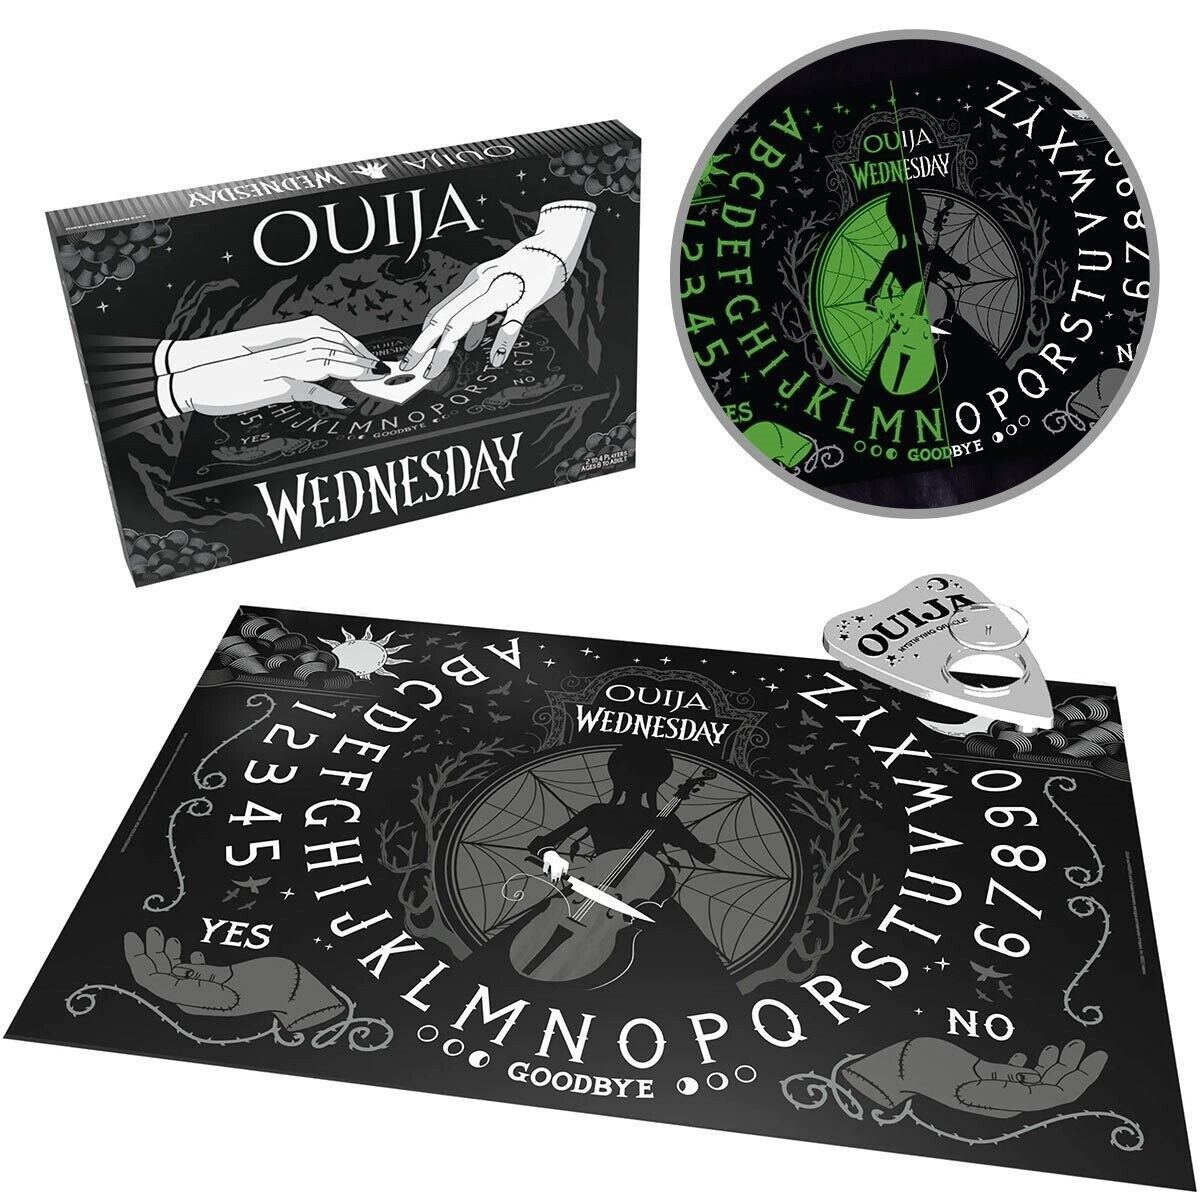 WEDNESDAY • Ouija Board Game  Bundle w/Free Wednesday Funko Pop • Ships Free